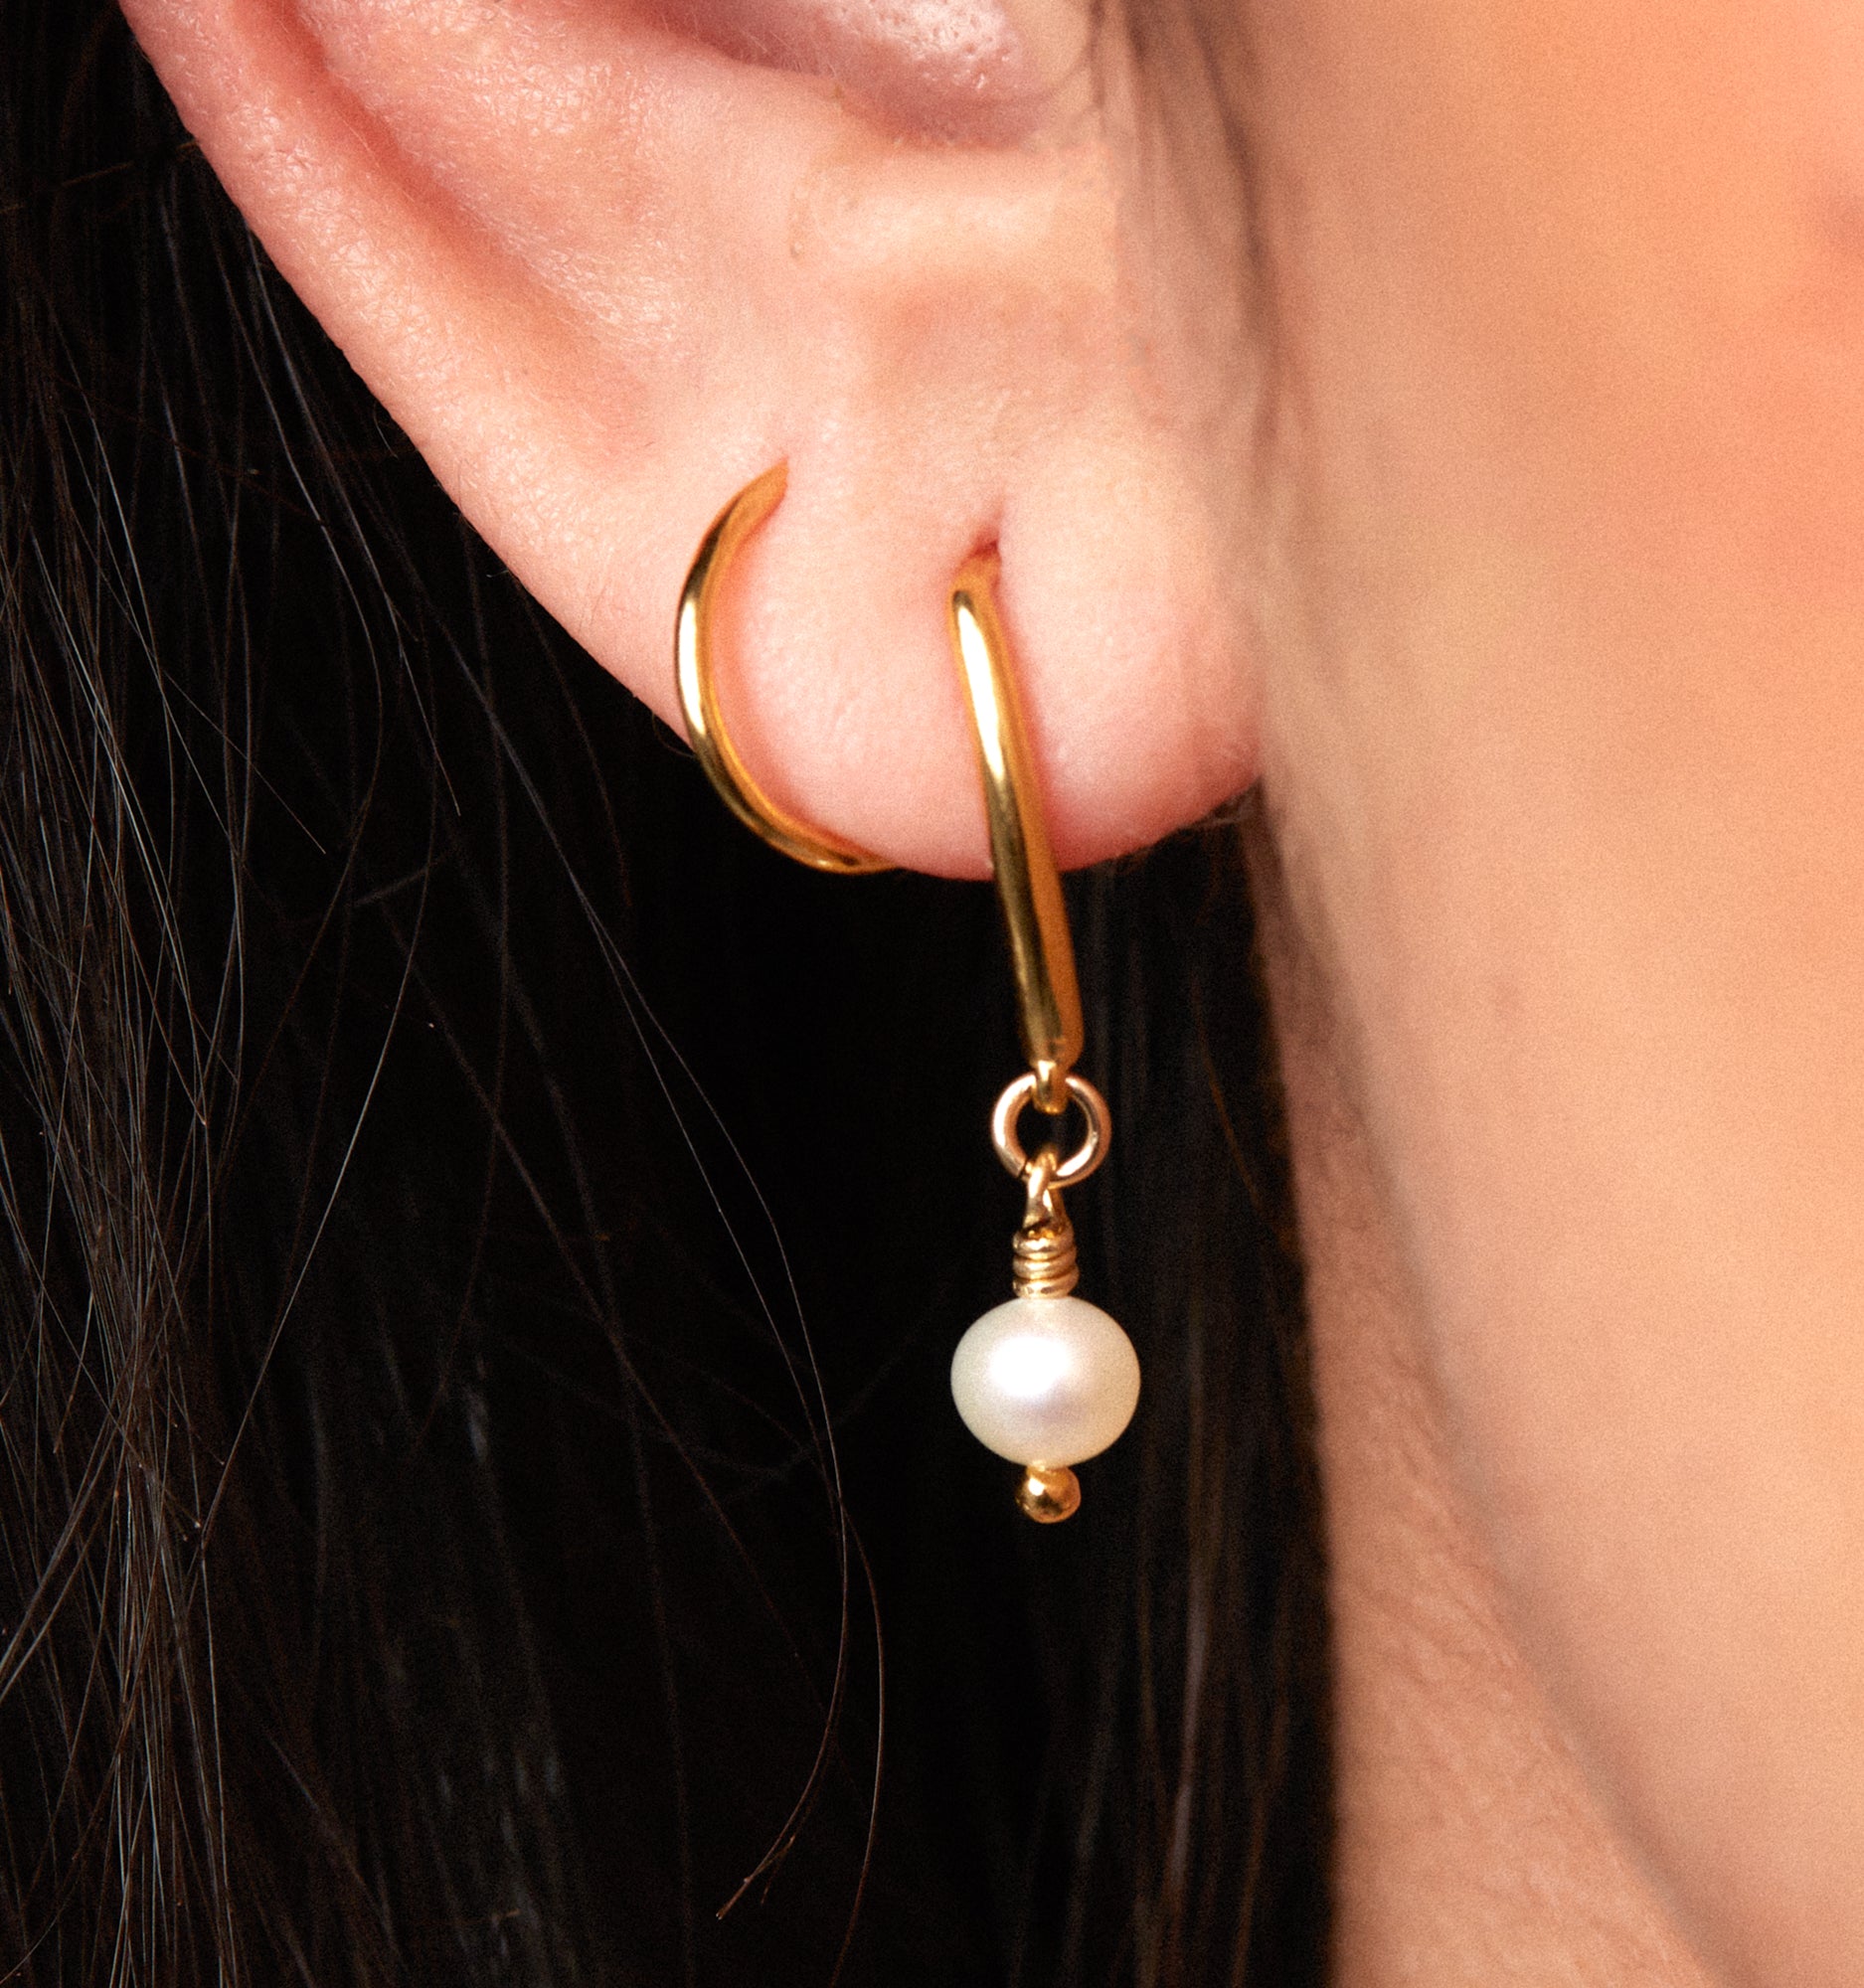 Double Twist Pearl Hoops - Illusion Earrings